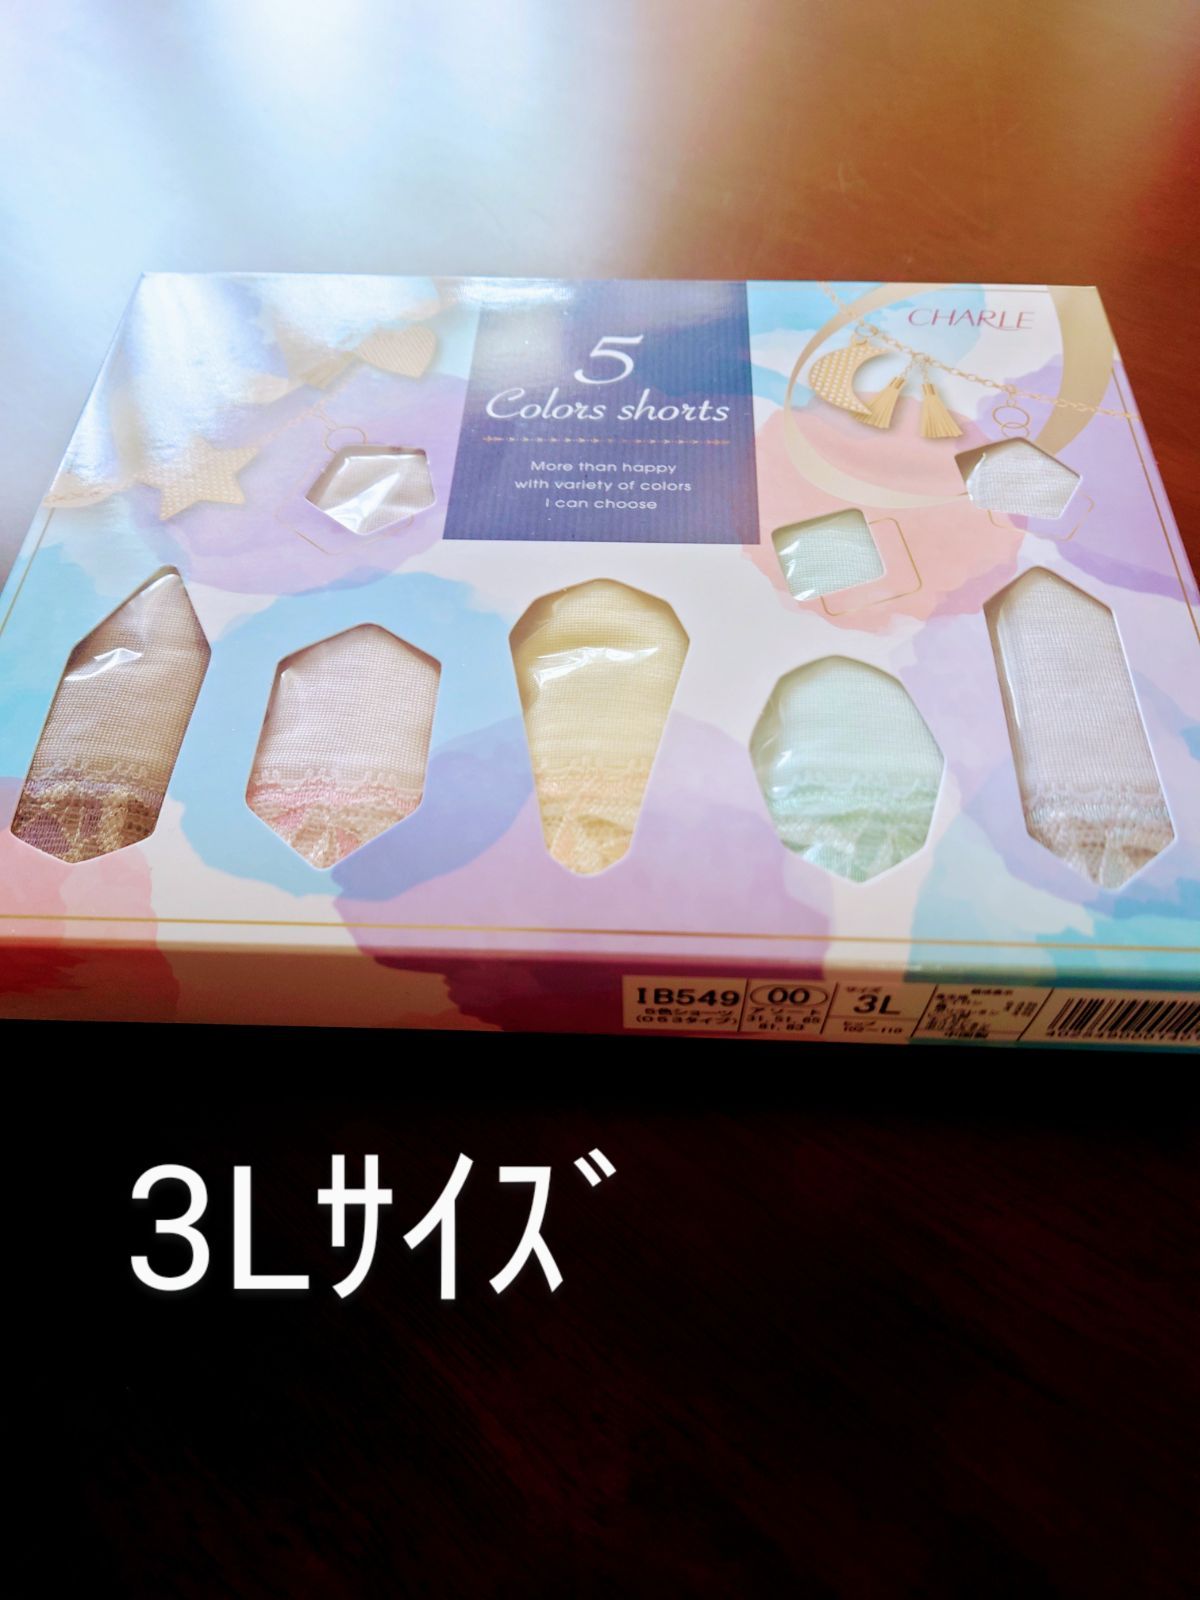 シャルレ5色ショーツ(053タイプ小ぶり)3Lｻｲｽﾞ新製品未開封 - メルカリ